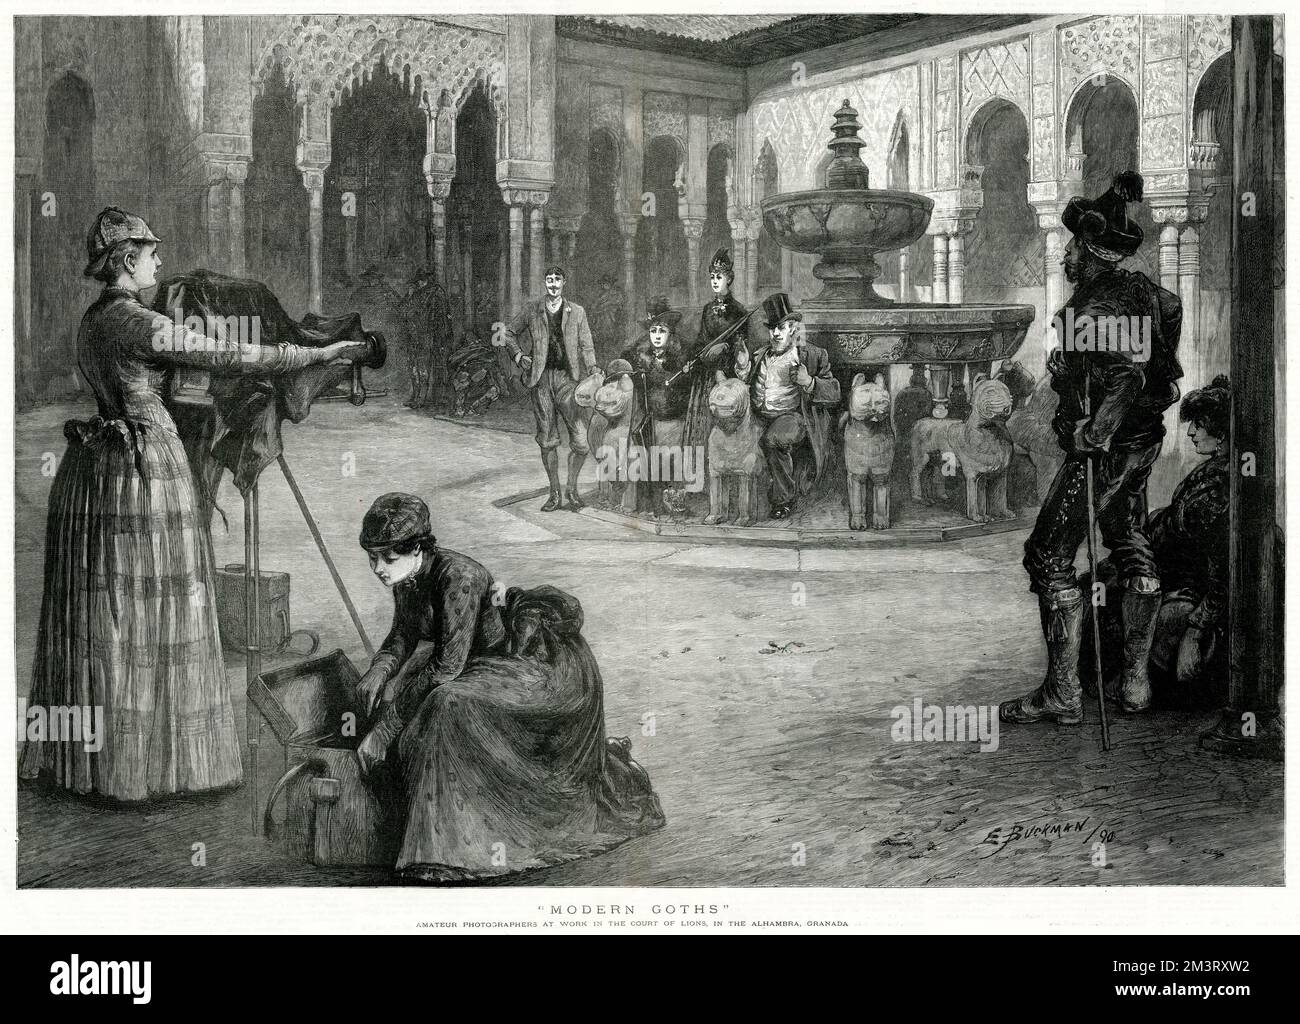 Fotografi amatoriali al lavoro presso la Corte dei Lions dell'Alhambra, Granada. La donna ha svolto un ruolo attivo nello sviluppo della fotografia come mezzo e nel 1890, la fotografia stava cominciando ad essere vista un'occupazione femminile adatta. Data: 1890 Foto Stock